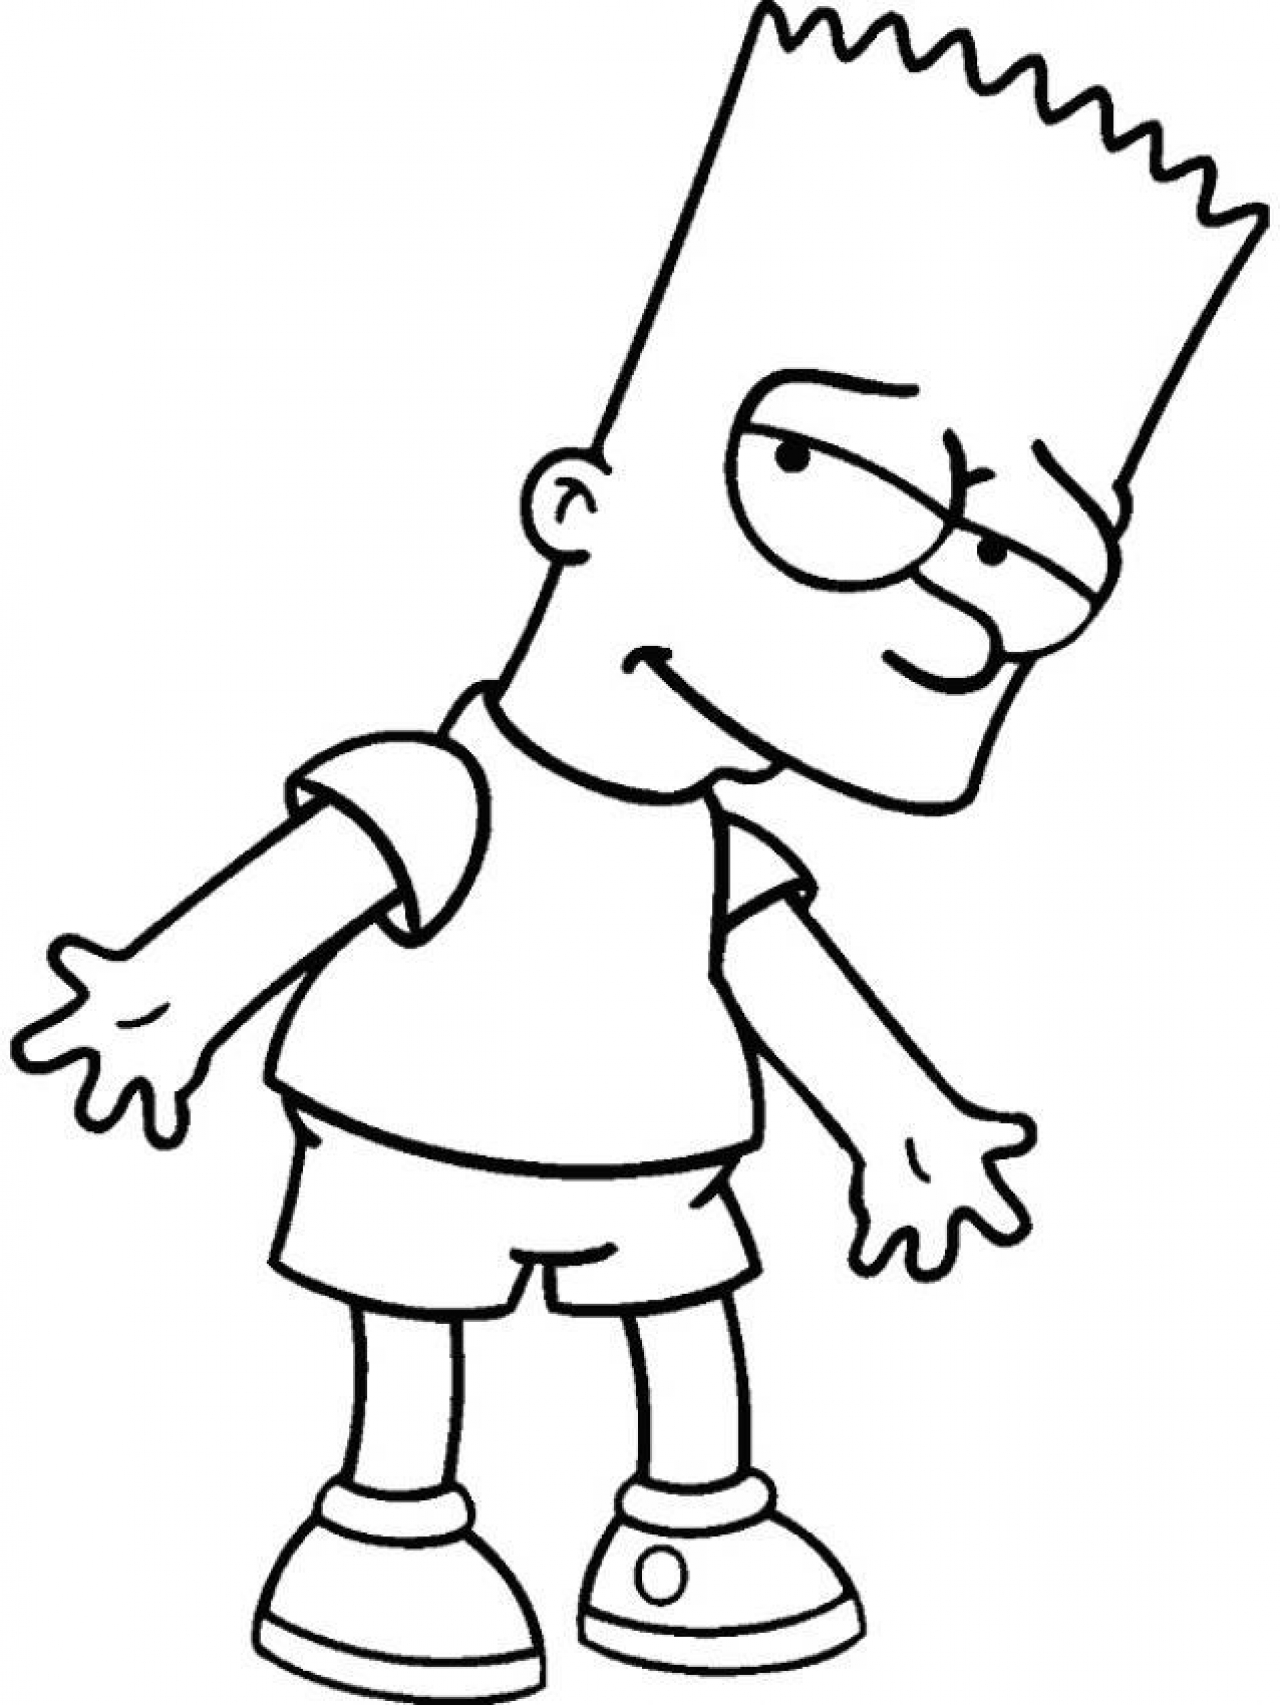 Раскраска мальчика из мультфильма Симпсоны (развлечение)